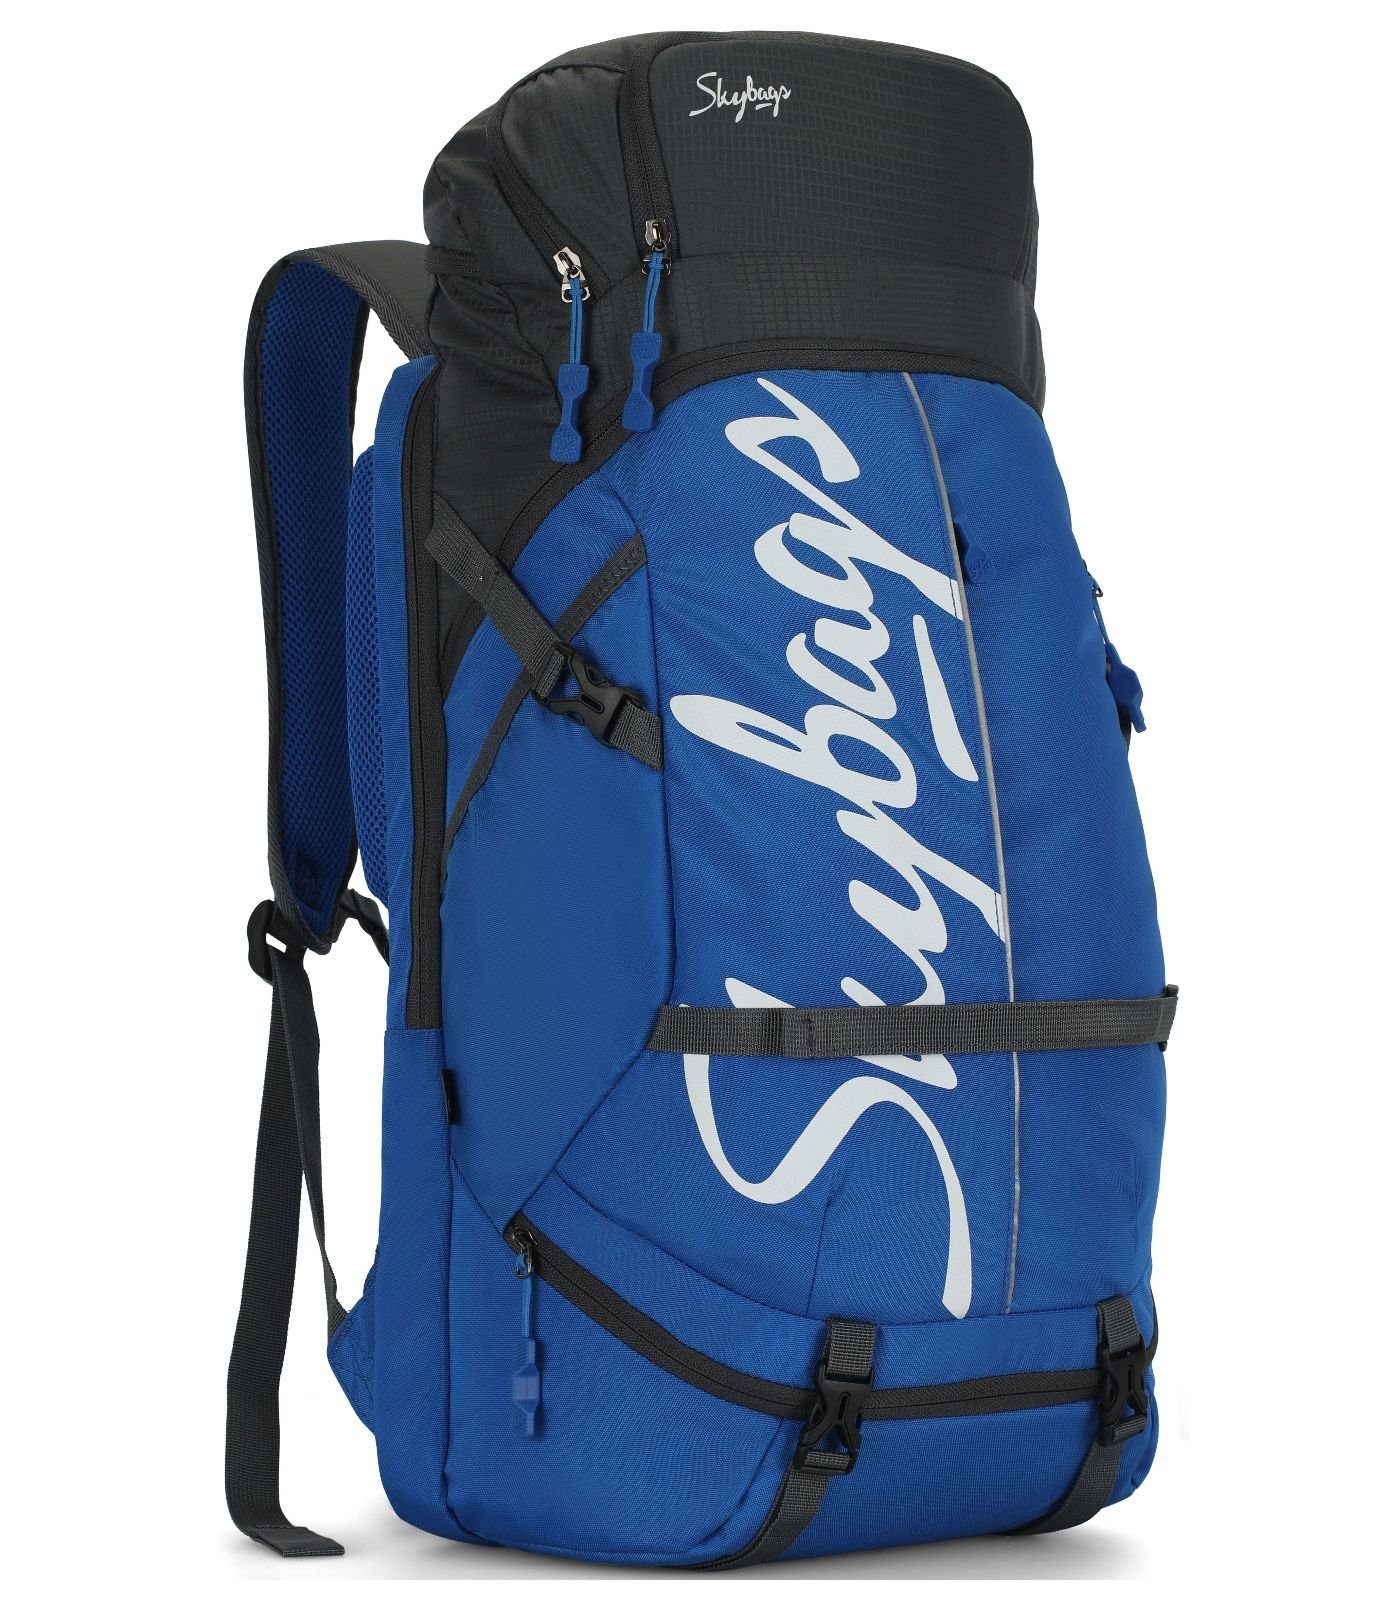 Textil Rucksack Skybags Taschen